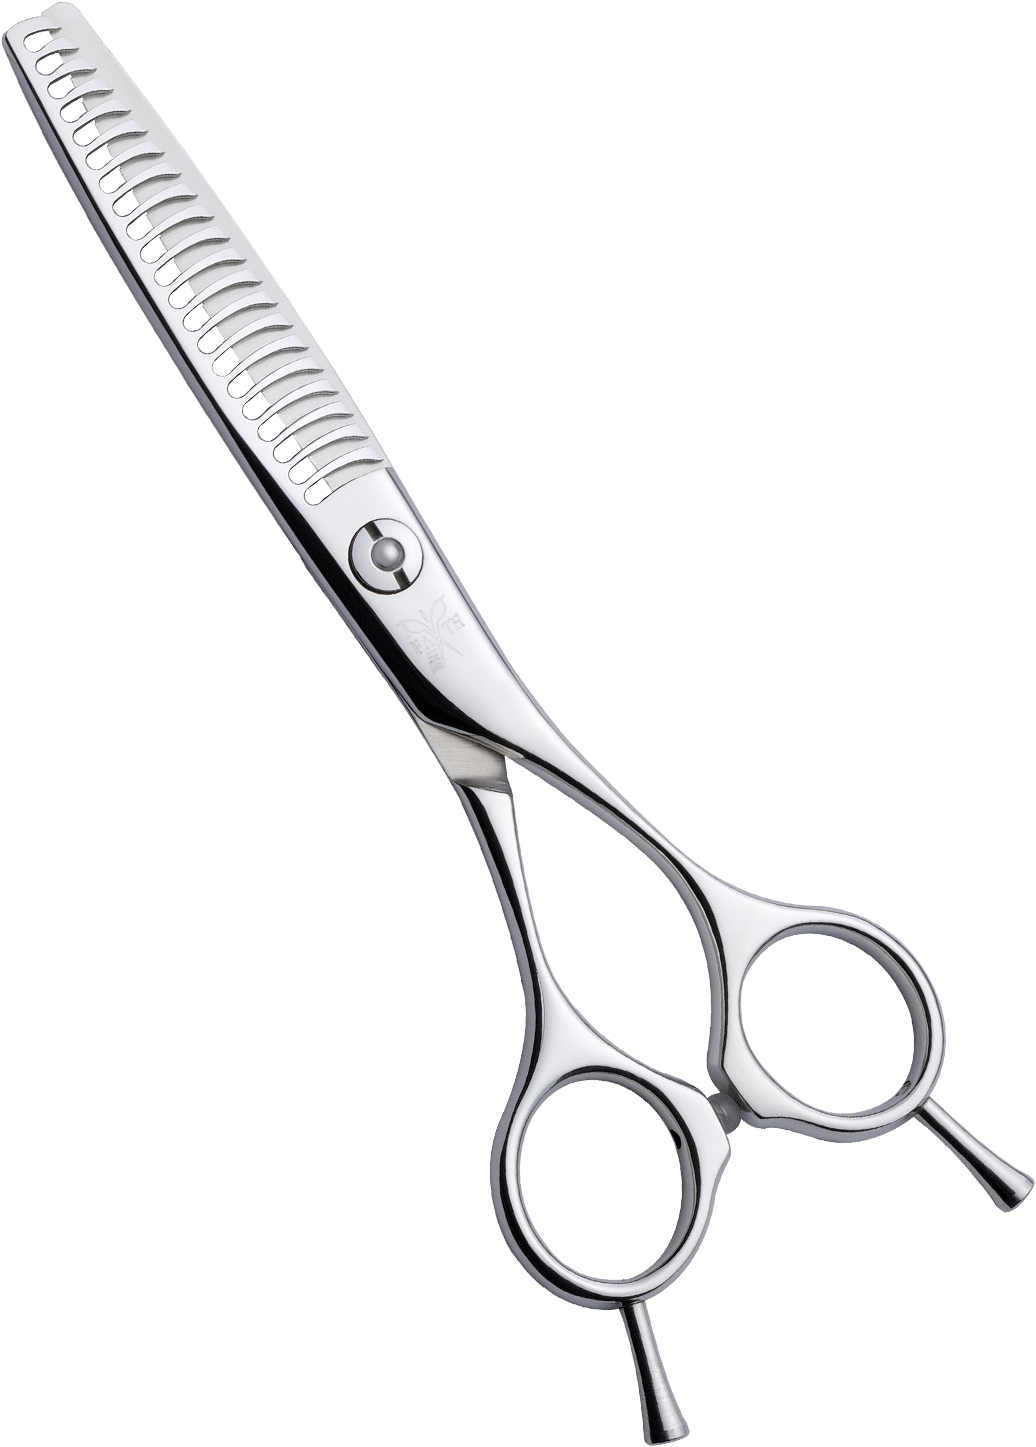 Hair Cutting Scissors Pictures - Brush (1167x1500)